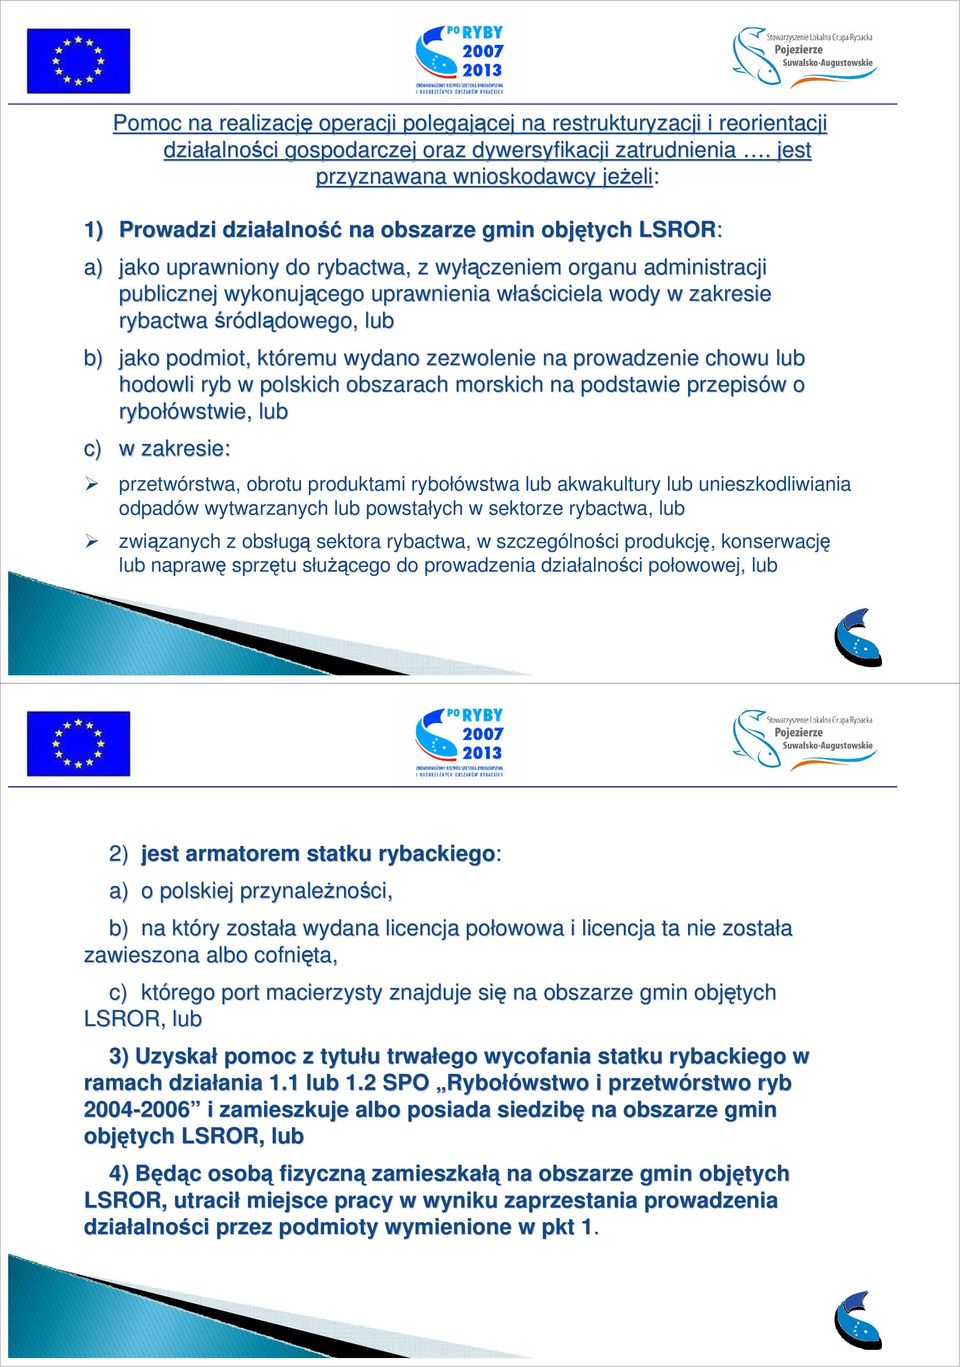 uprawnienia właściciela w wody w zakresie rybactwa śródlądowego, lub b) jako podmiot, któremu wydano zezwolenie na prowadzenie chowu lub hodowli ryb w polskich obszarach morskich na podstawie